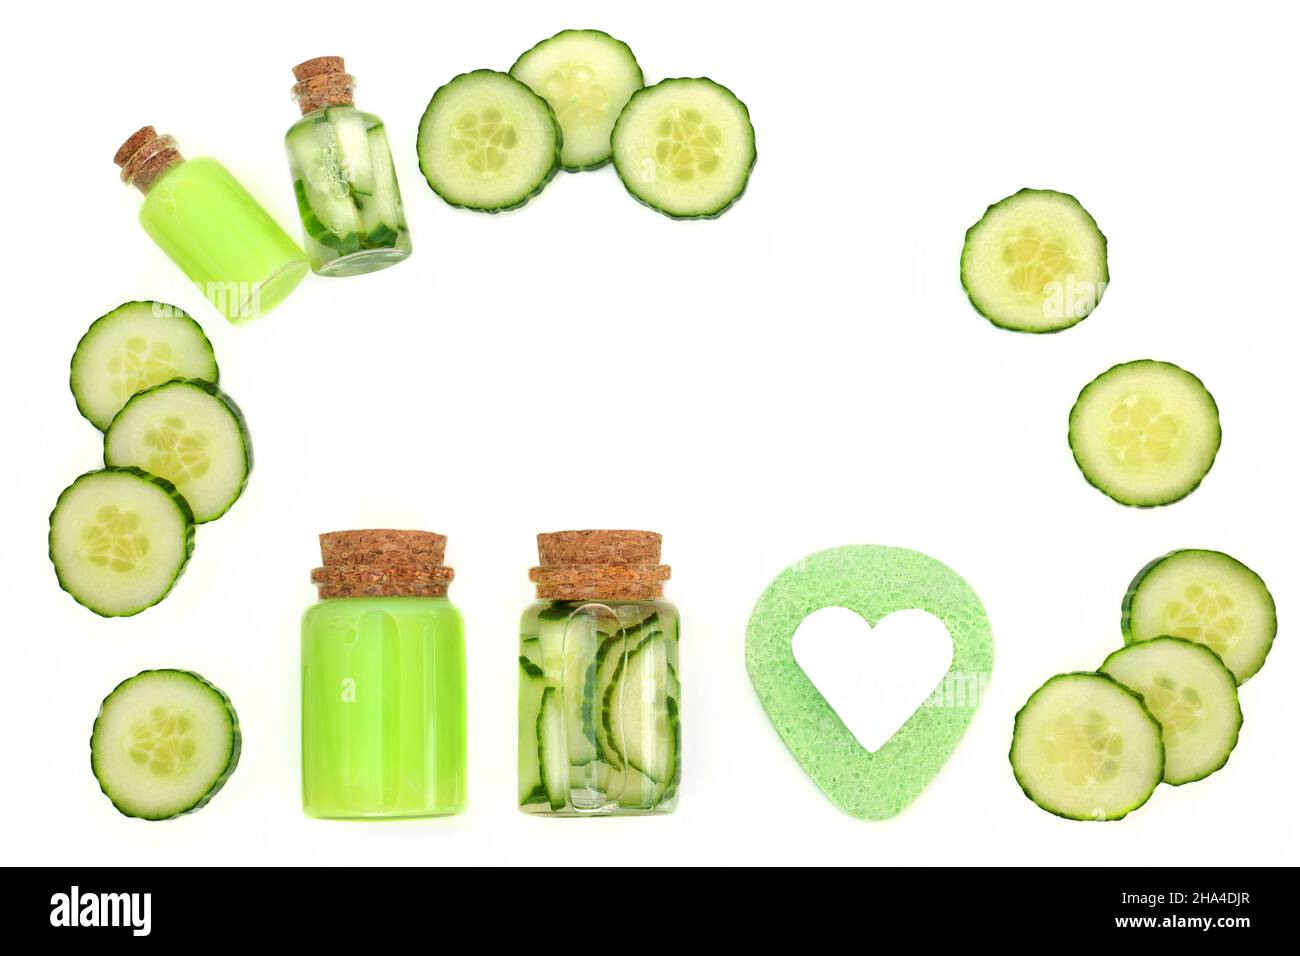 Natürliche frische Gurkenpflege Beauty-Behandlung mit Feuchtigkeitscreme, Gel in Flaschen, grünen Schwamm, Seife. Health Care Anti Aging strahlende Haut Konzept. Stockfoto